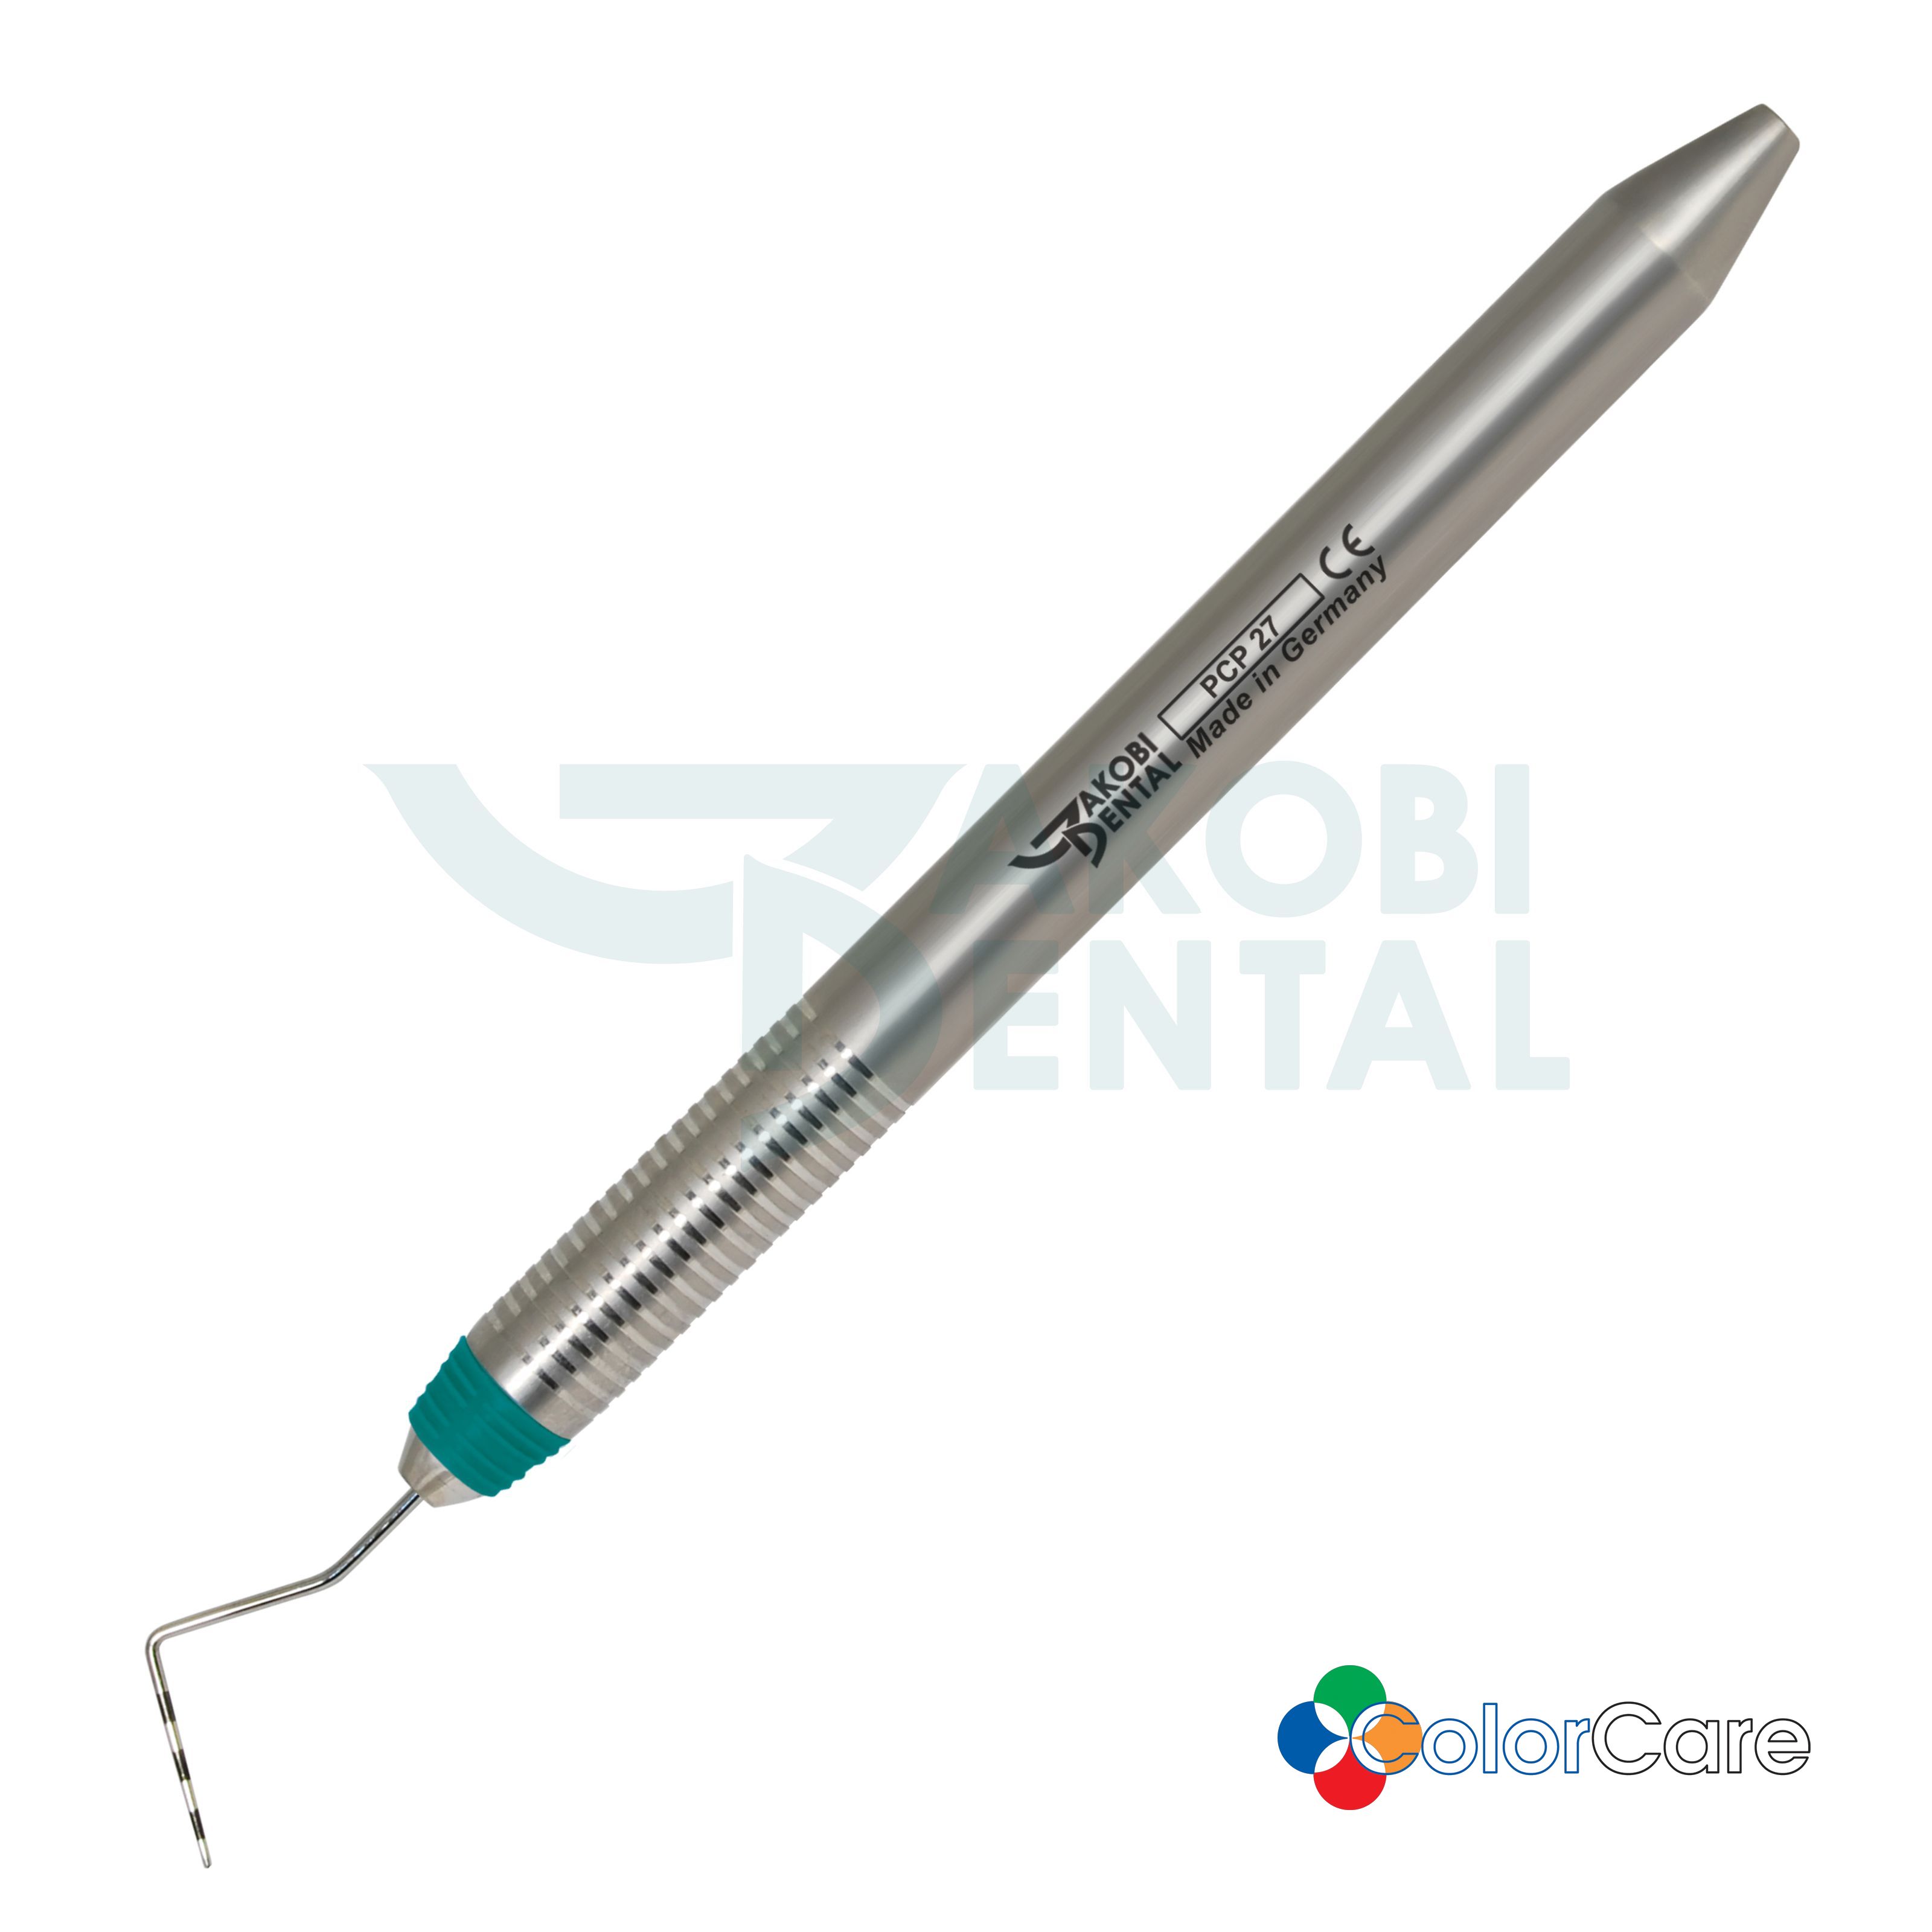 Periodontal probe PCP 2, ColorCare Handle # 7